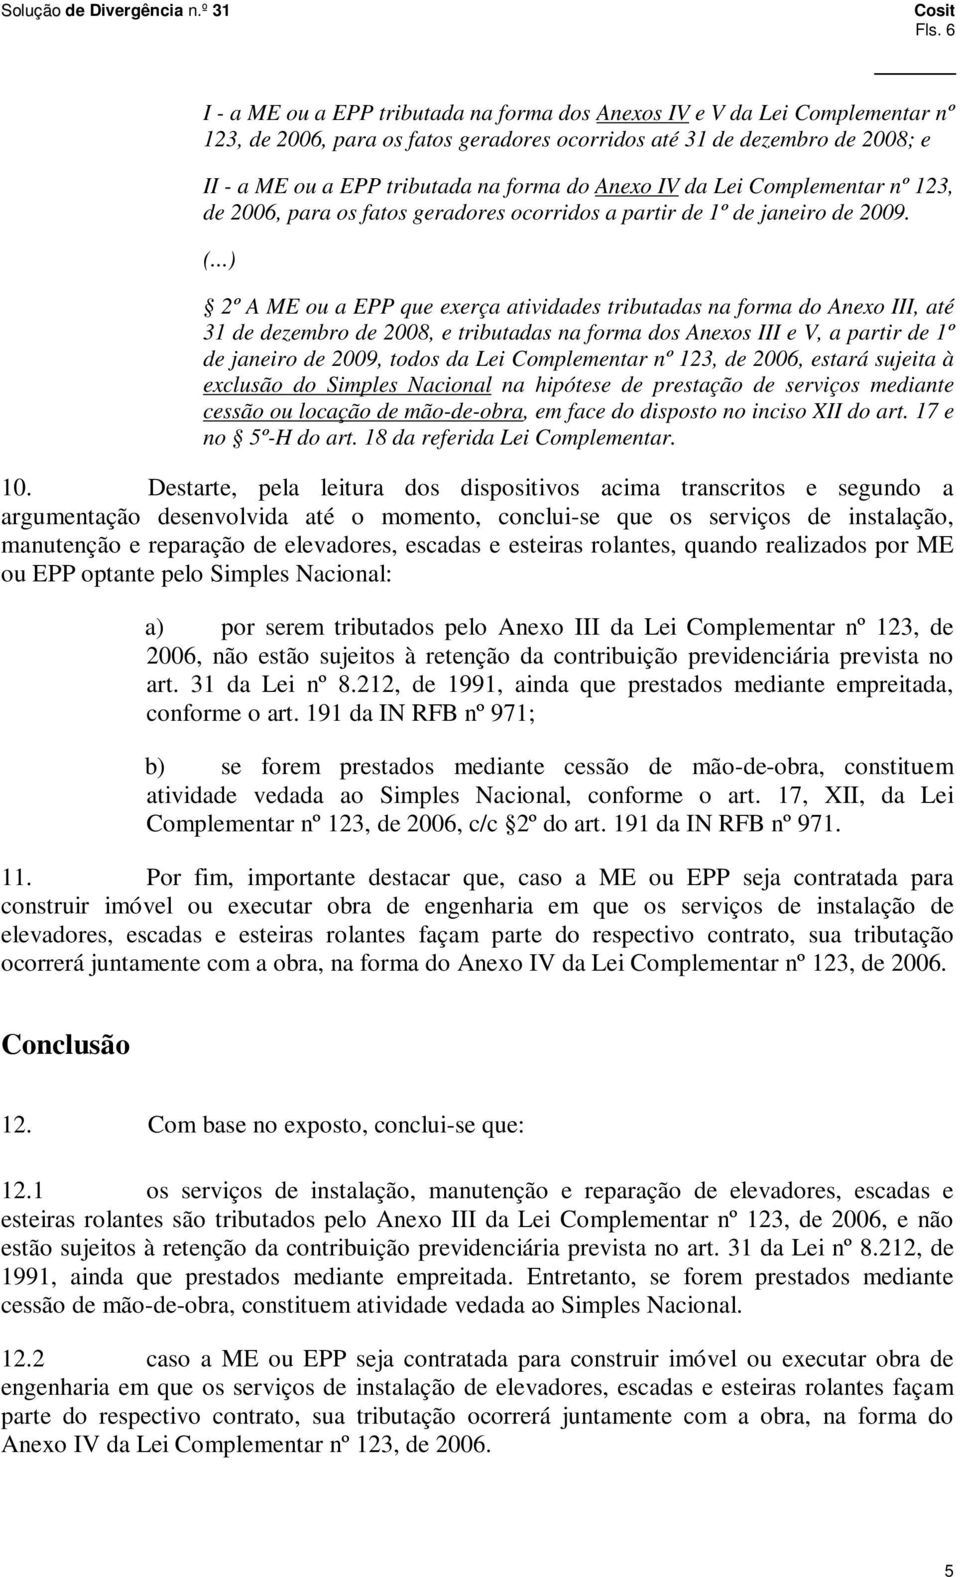 2º A ME ou a EPP que exerça atividades tributadas na forma do Anexo III, até 31 de dezembro de 2008, e tributadas na forma dos Anexos III e V, a partir de 1º de janeiro de 2009, todos da Lei